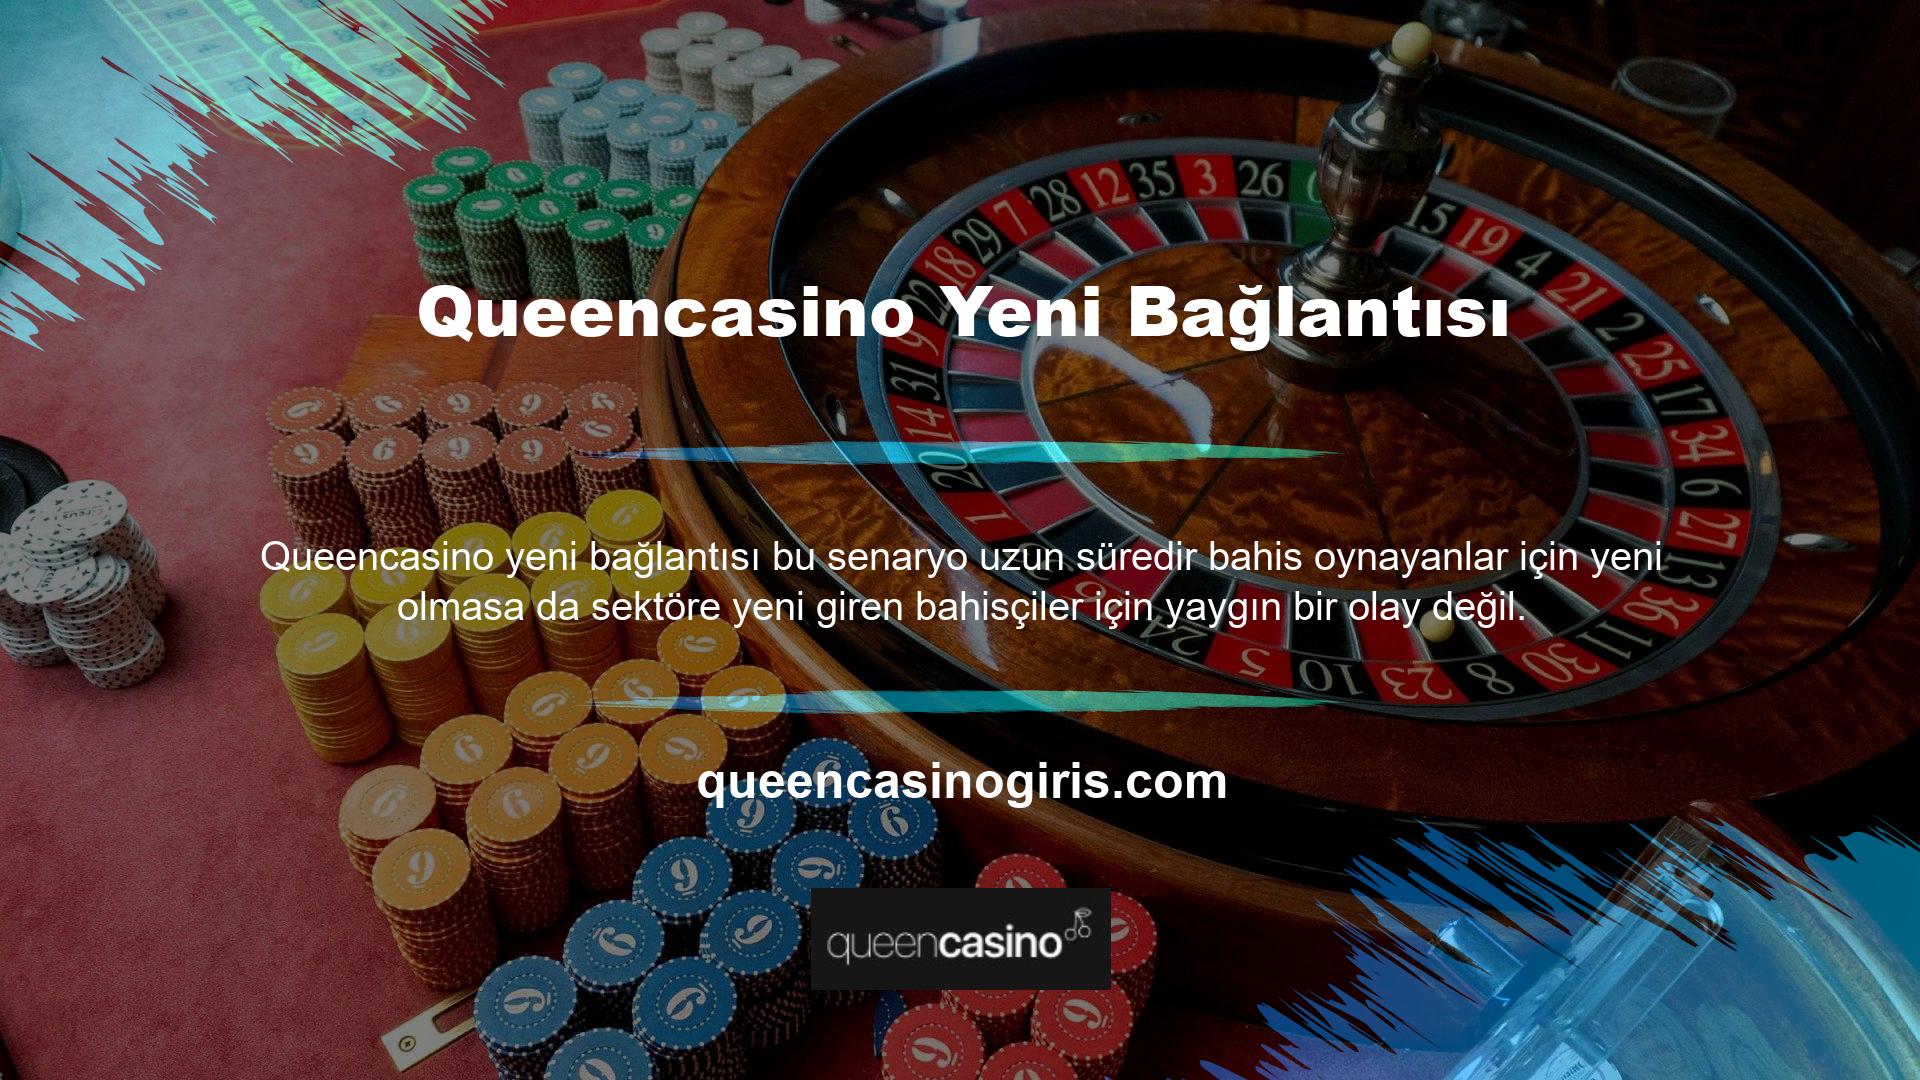 Queencasino yeni giriş adresinin sık sık değişmesinin nedeni yasa dışı casino sitelerinden biri olmasıdır